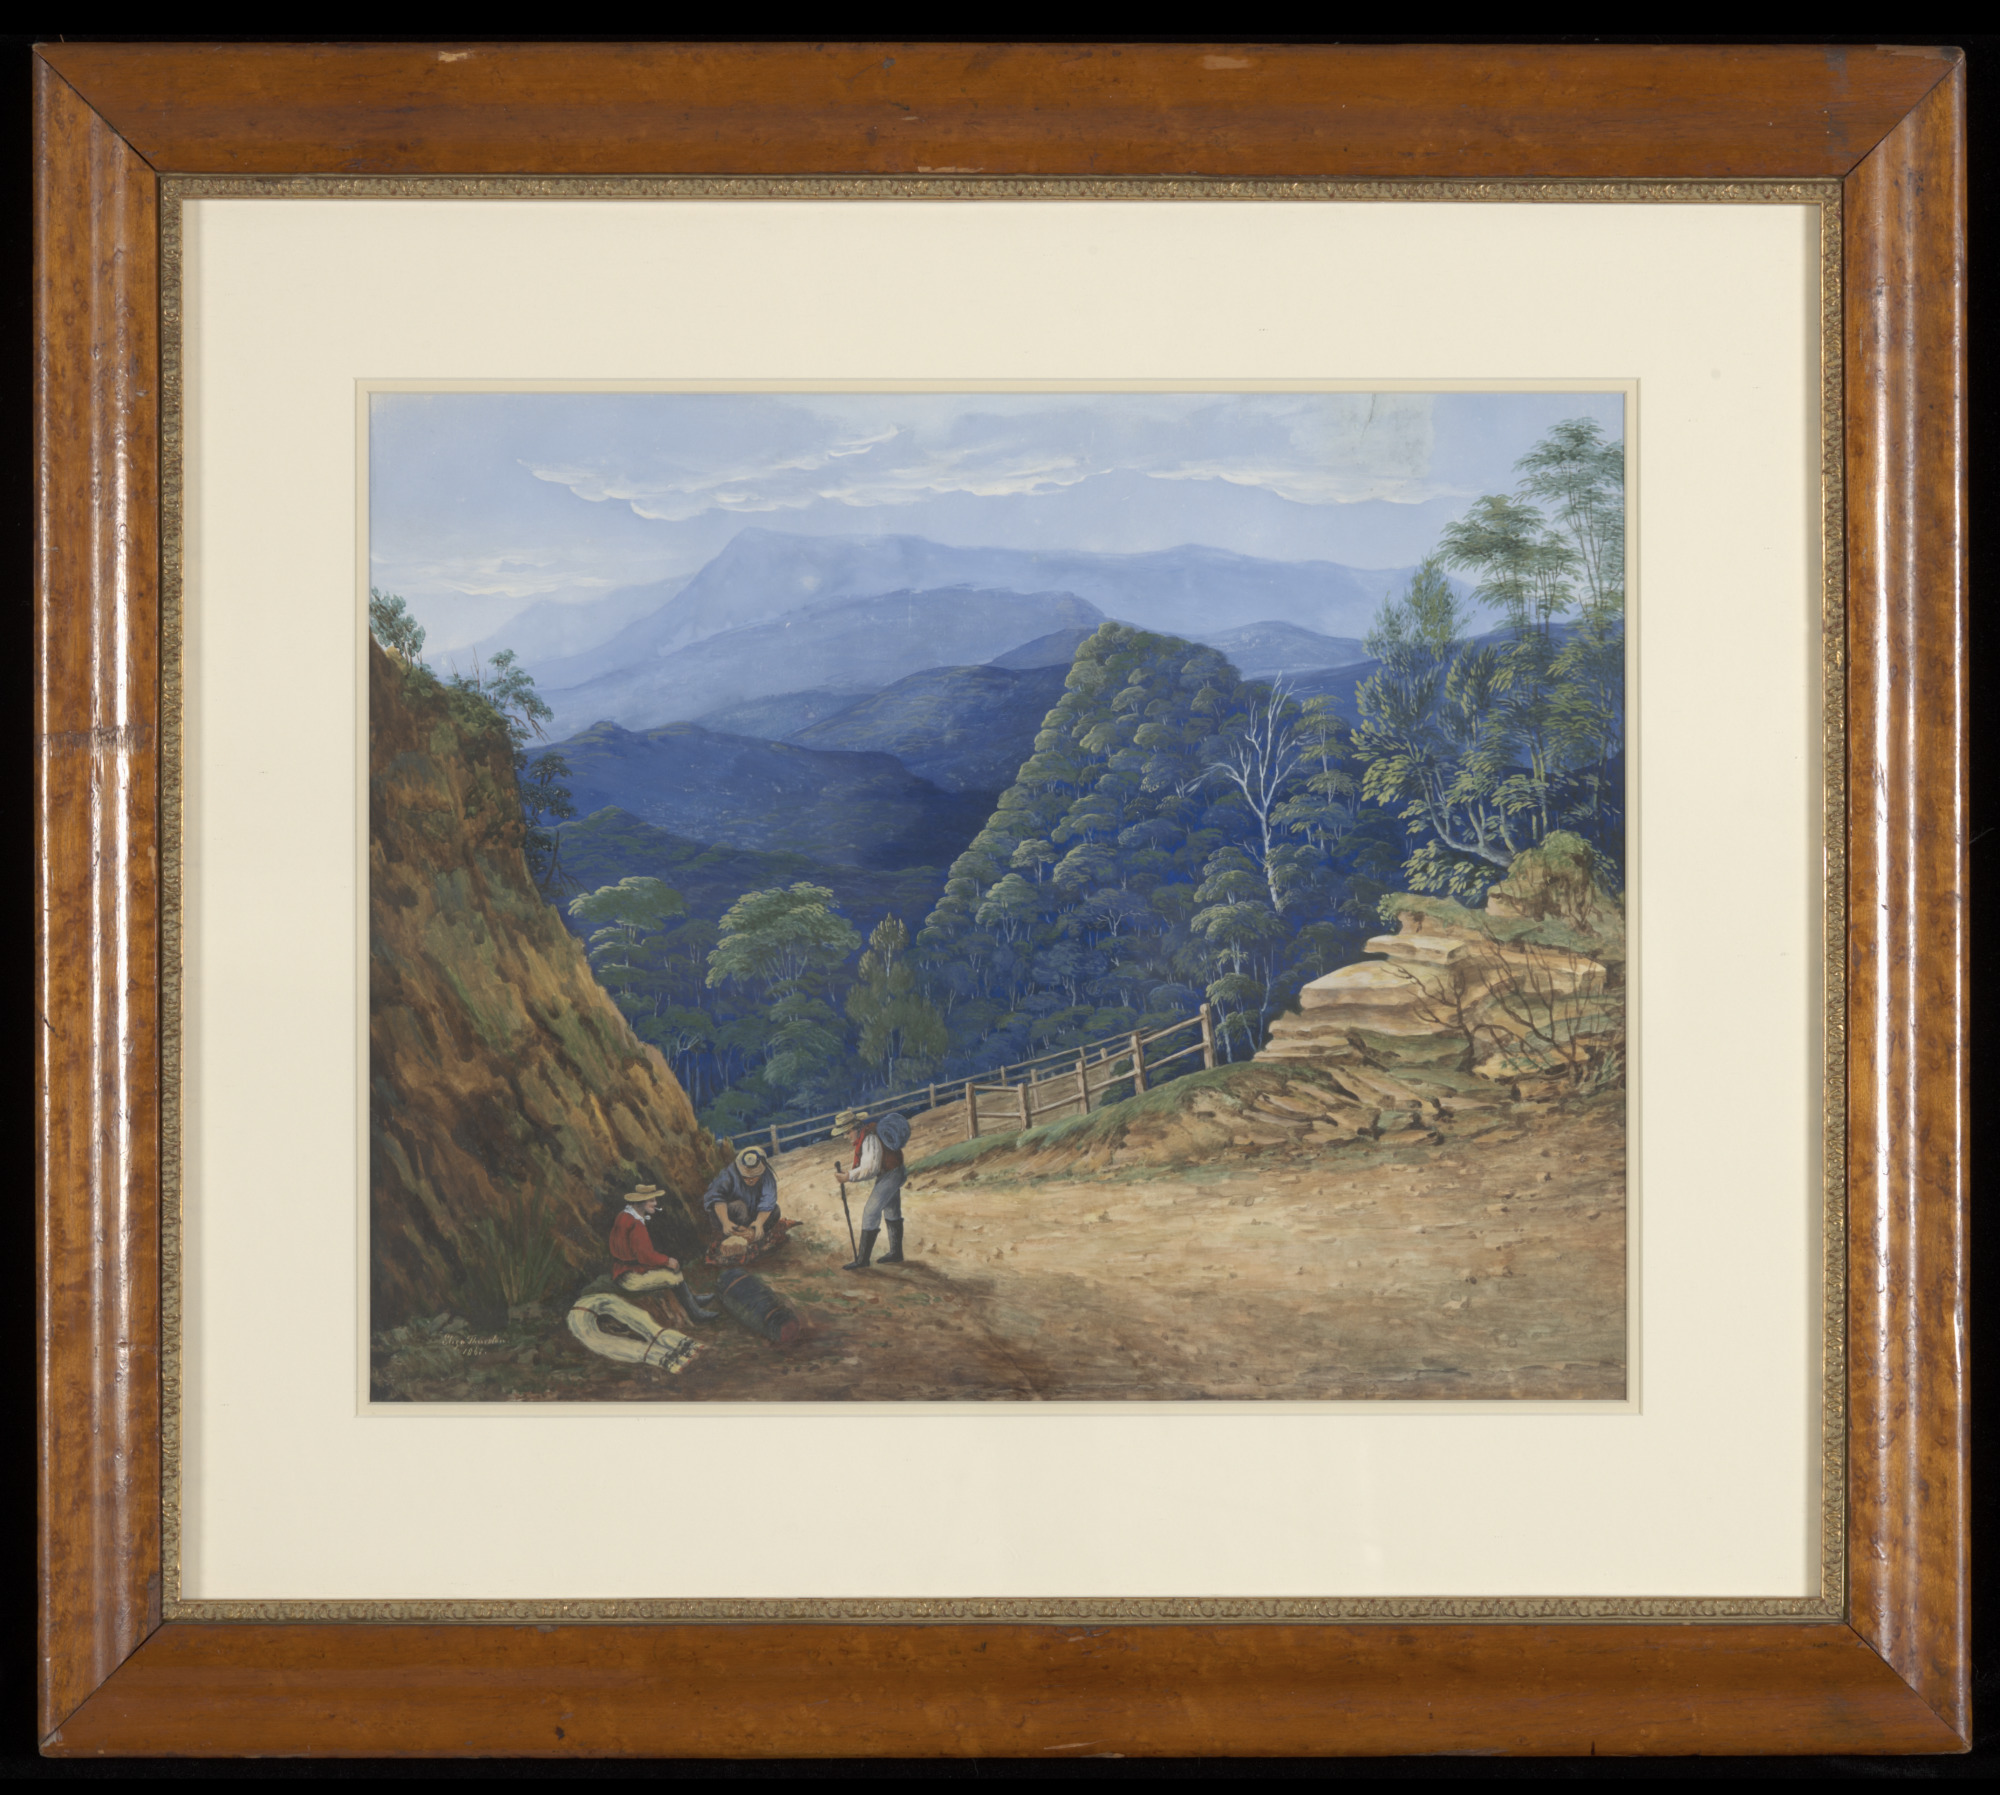 Victoria Pass, Blue Mountains, by Eliza Thurston,1861